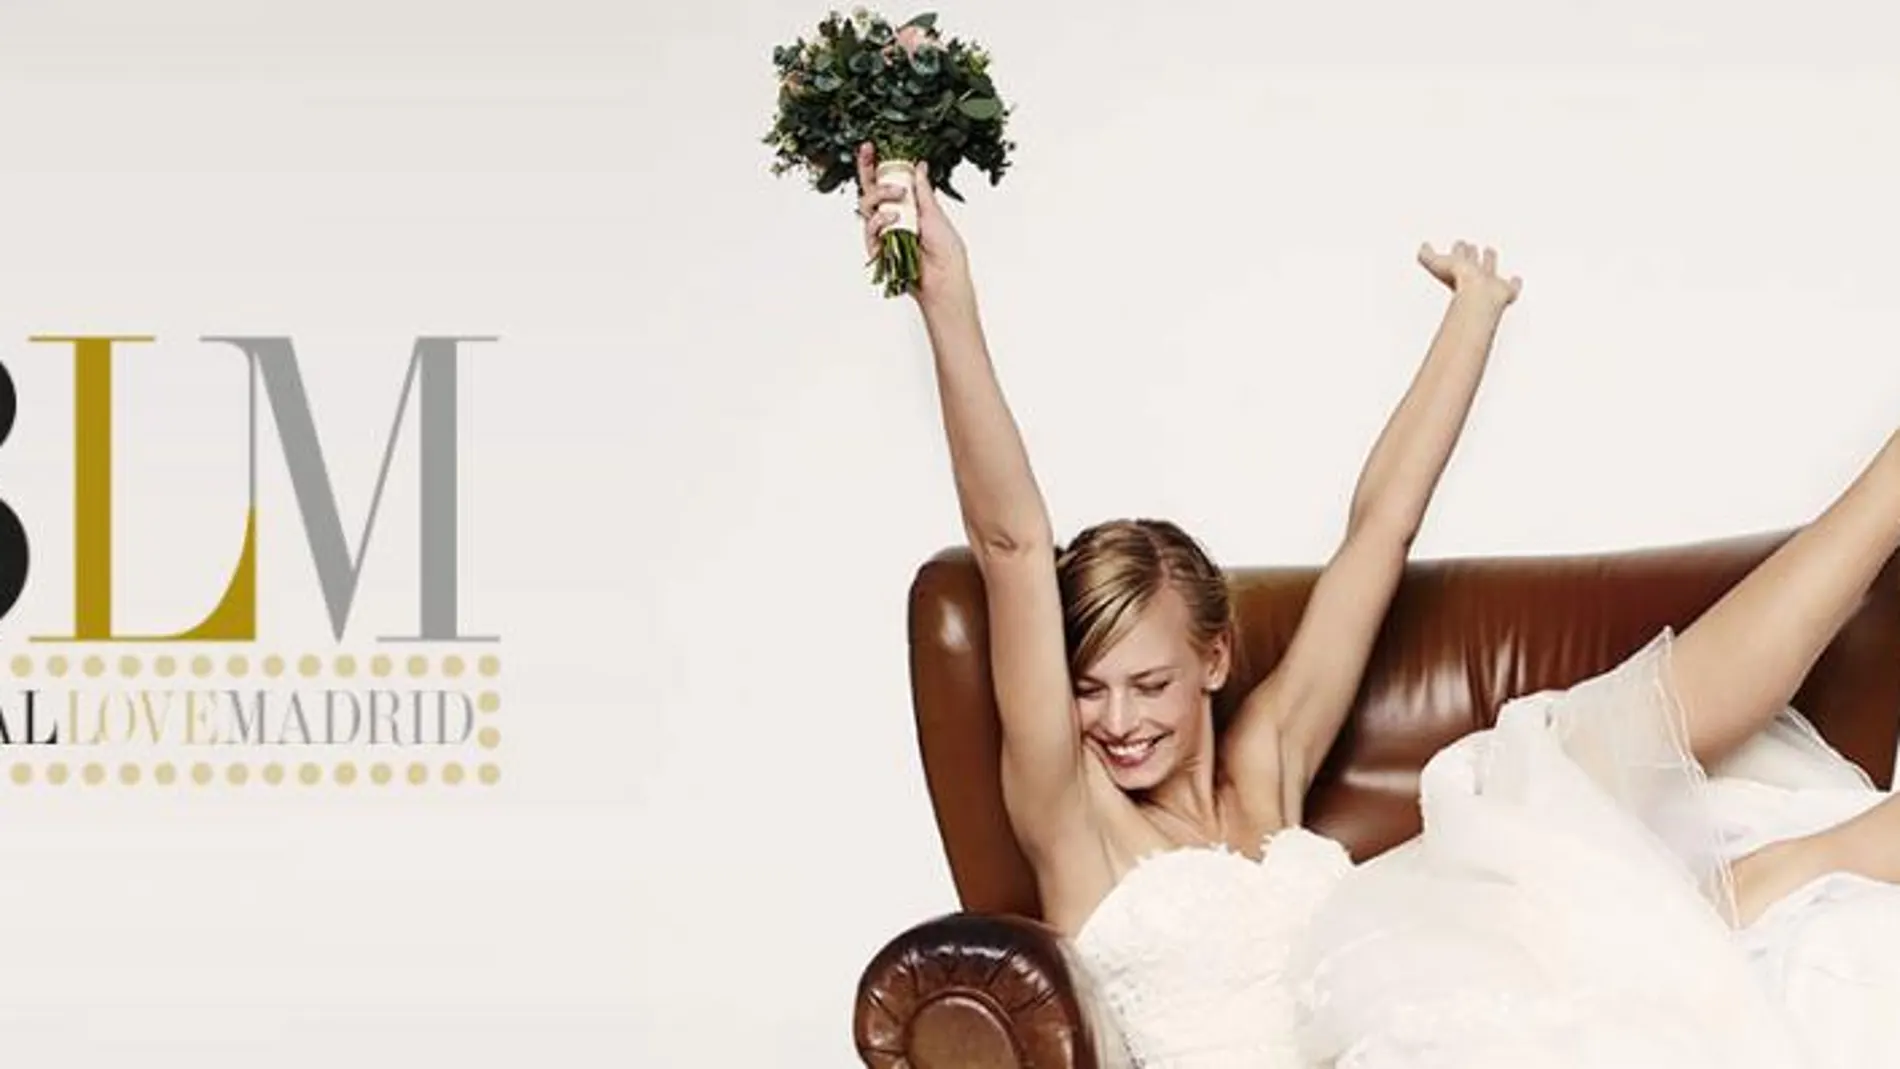 Bridal Love Madrid, el nuevo concepto de pasarela de novias